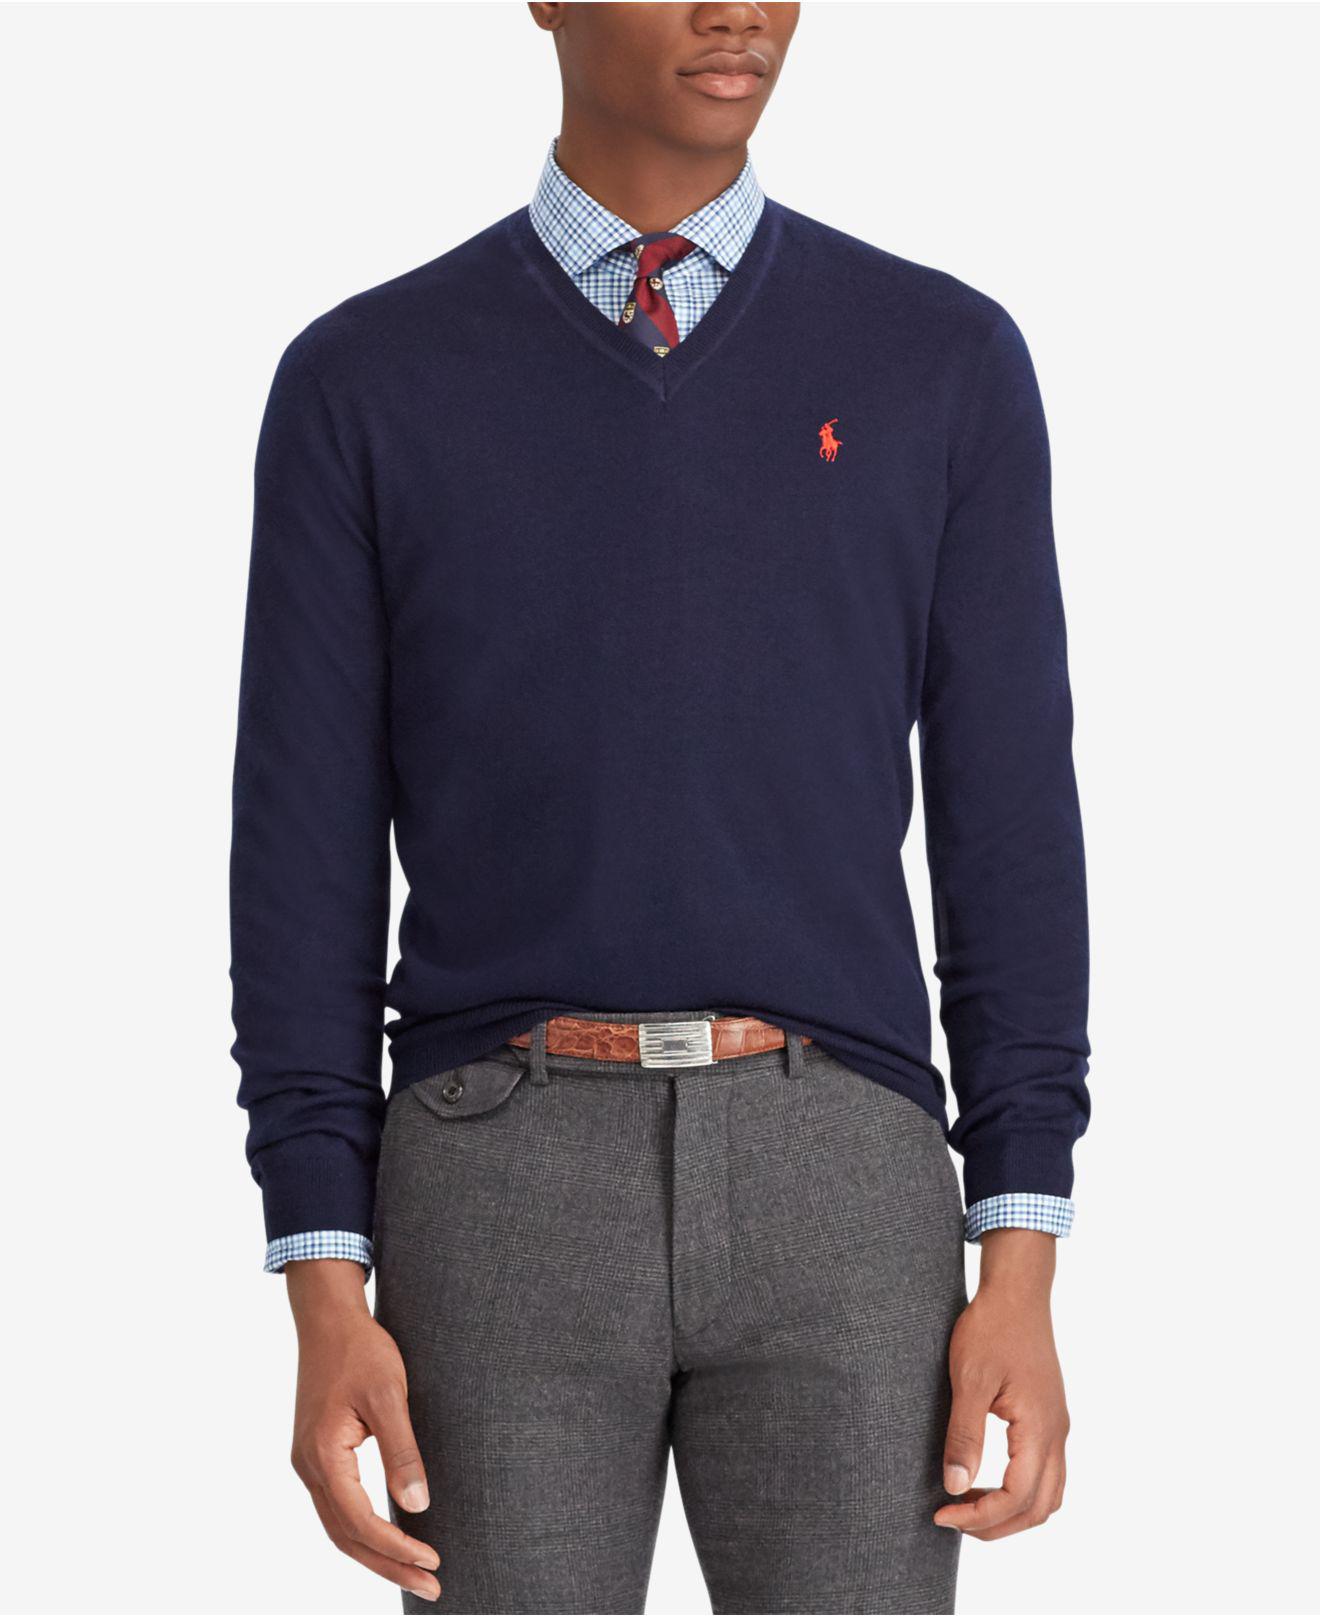 Lyst - Polo Ralph Lauren Merino Wool V-neck Sweater in Blue for Men